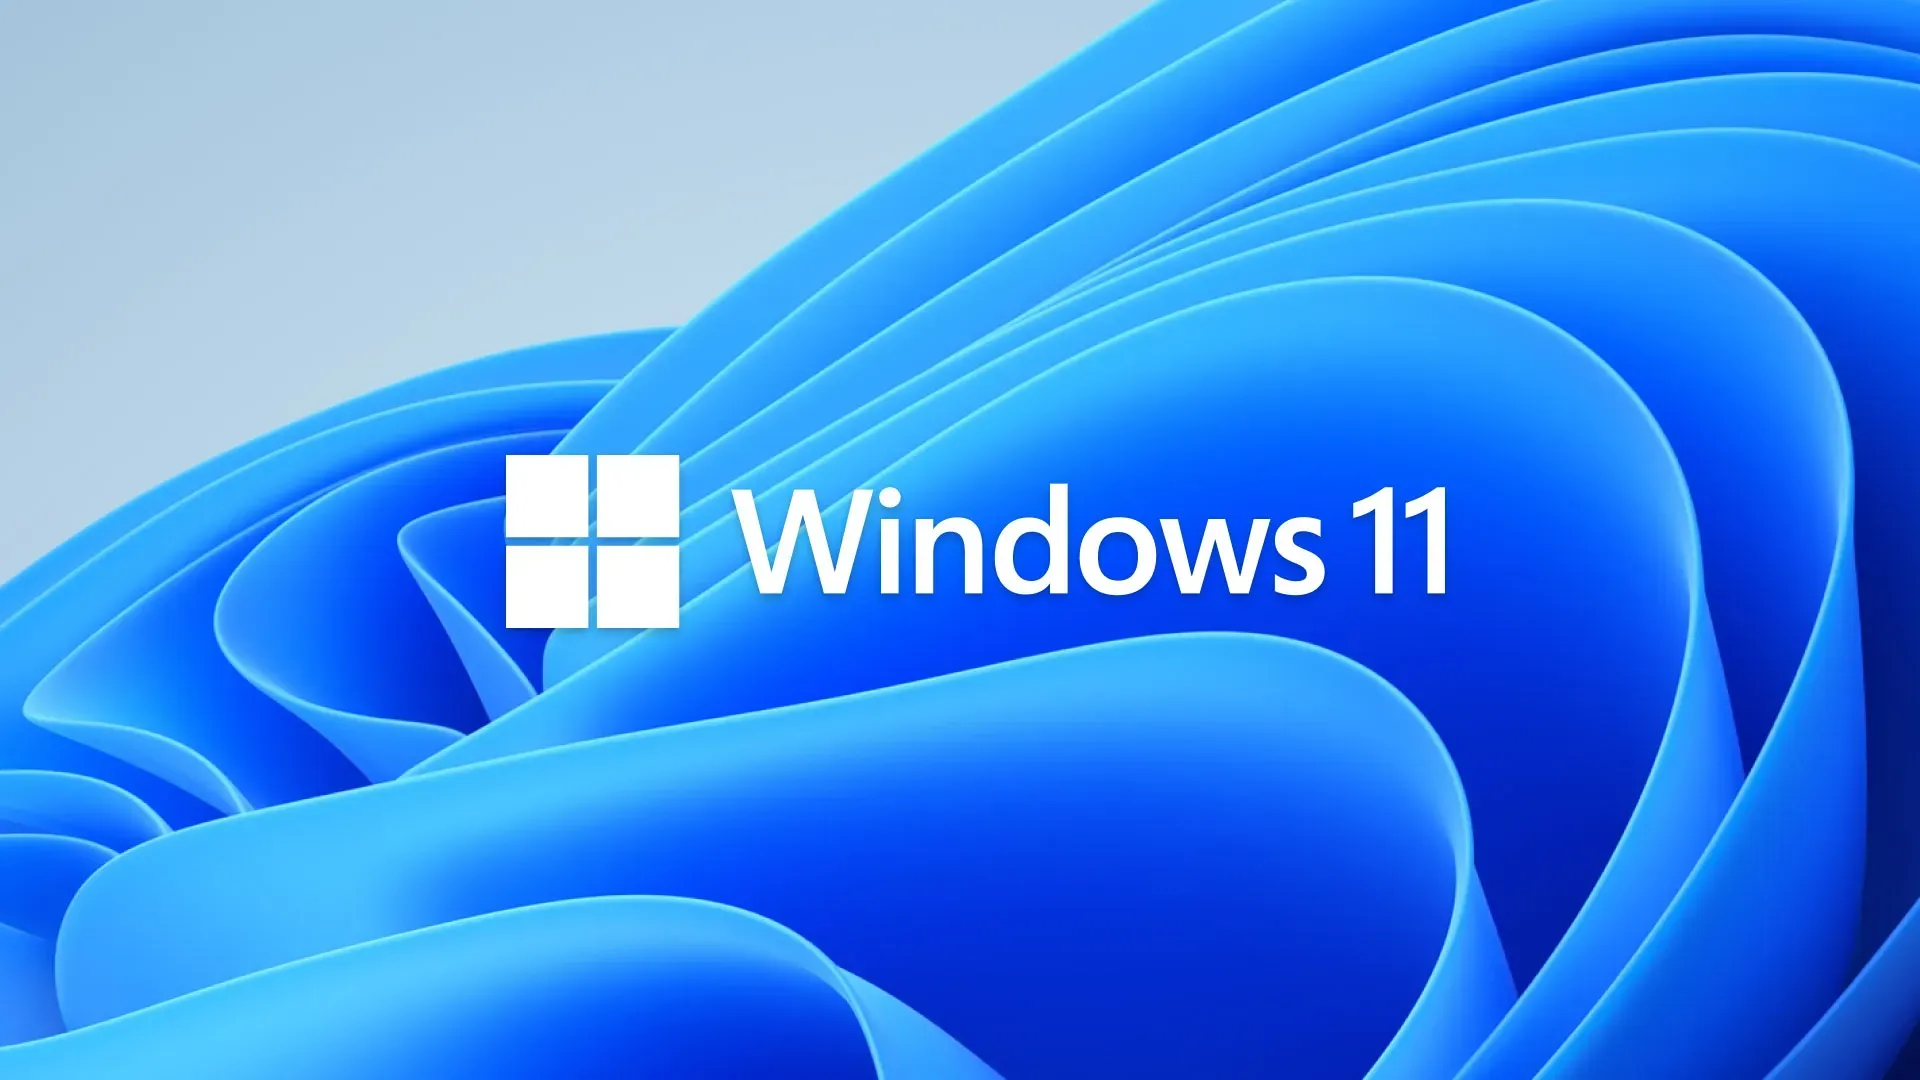 Oprogramowanie Microsoft Outlook dla systemu Windows 11/10 było podatne na problemy z „Millennium Bugiem”, cofając użytkowników do 1930 roku.